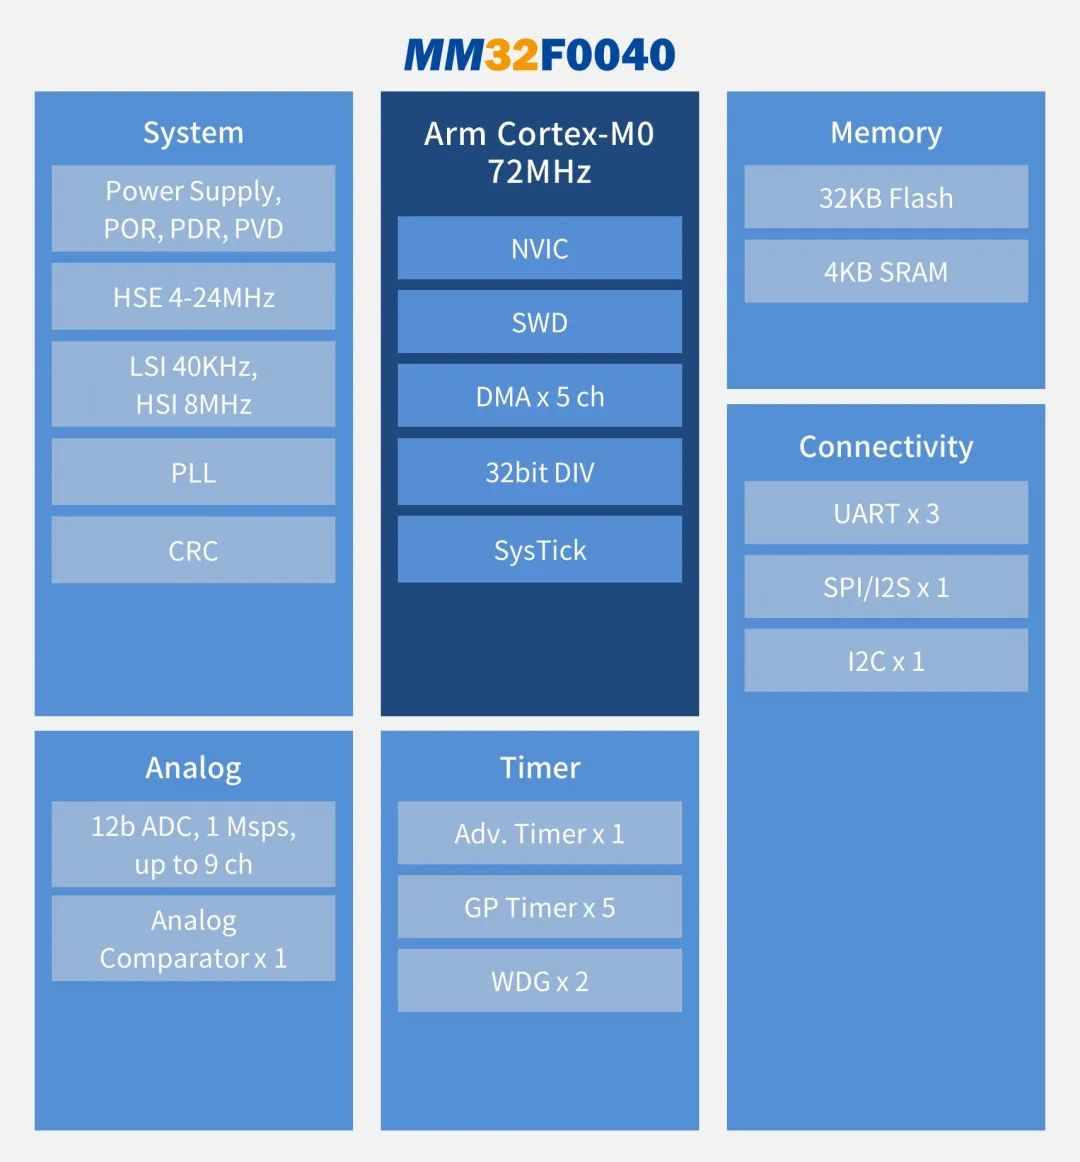 “灵动推出基于12寸晶圆打造的新产品MM32F0040系列"